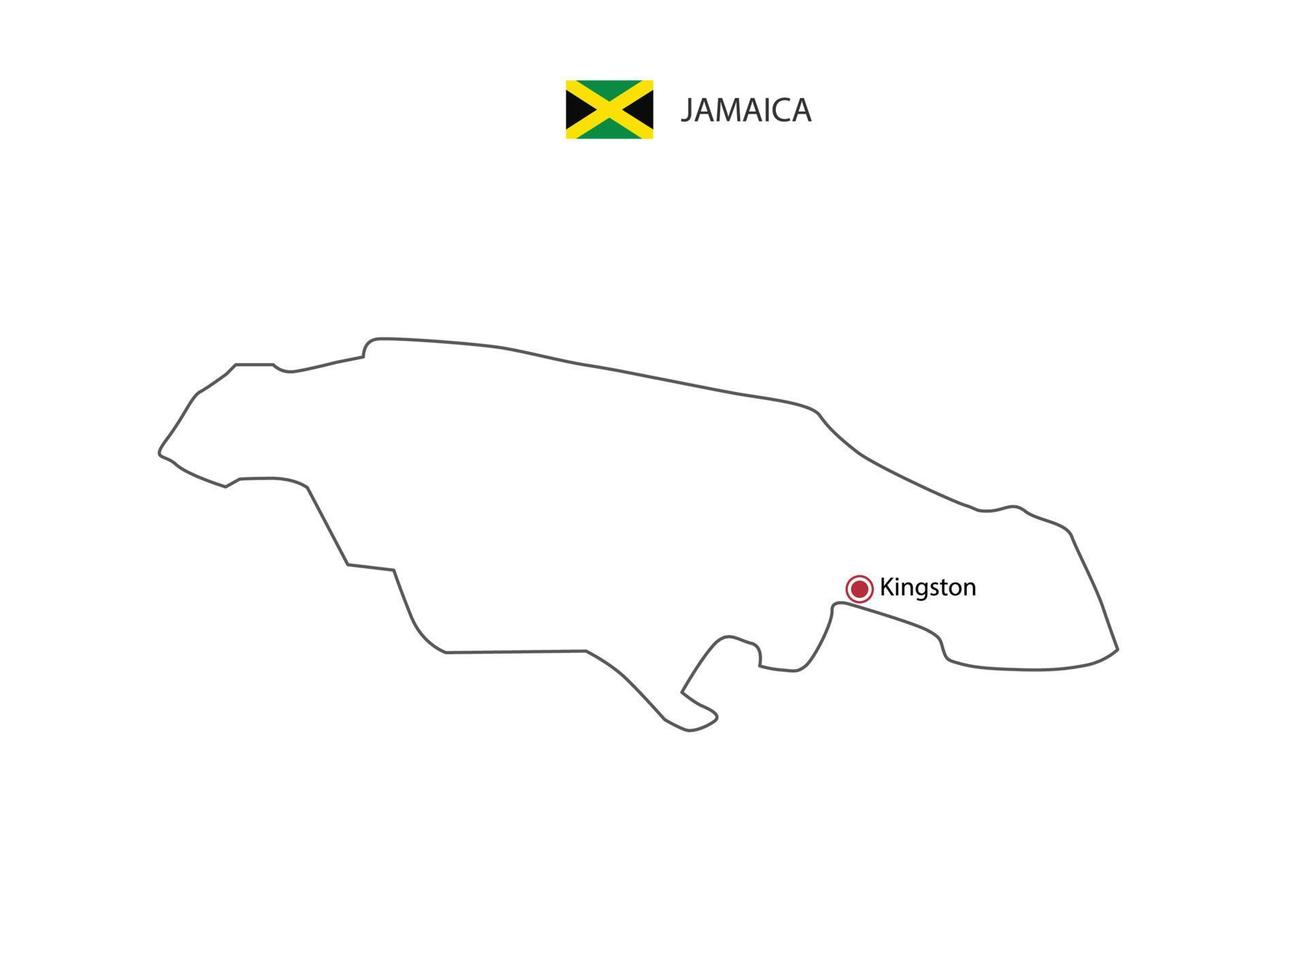 mão desenhar vetor de linha preta fina do mapa da jamaica com capital kingston em fundo branco.